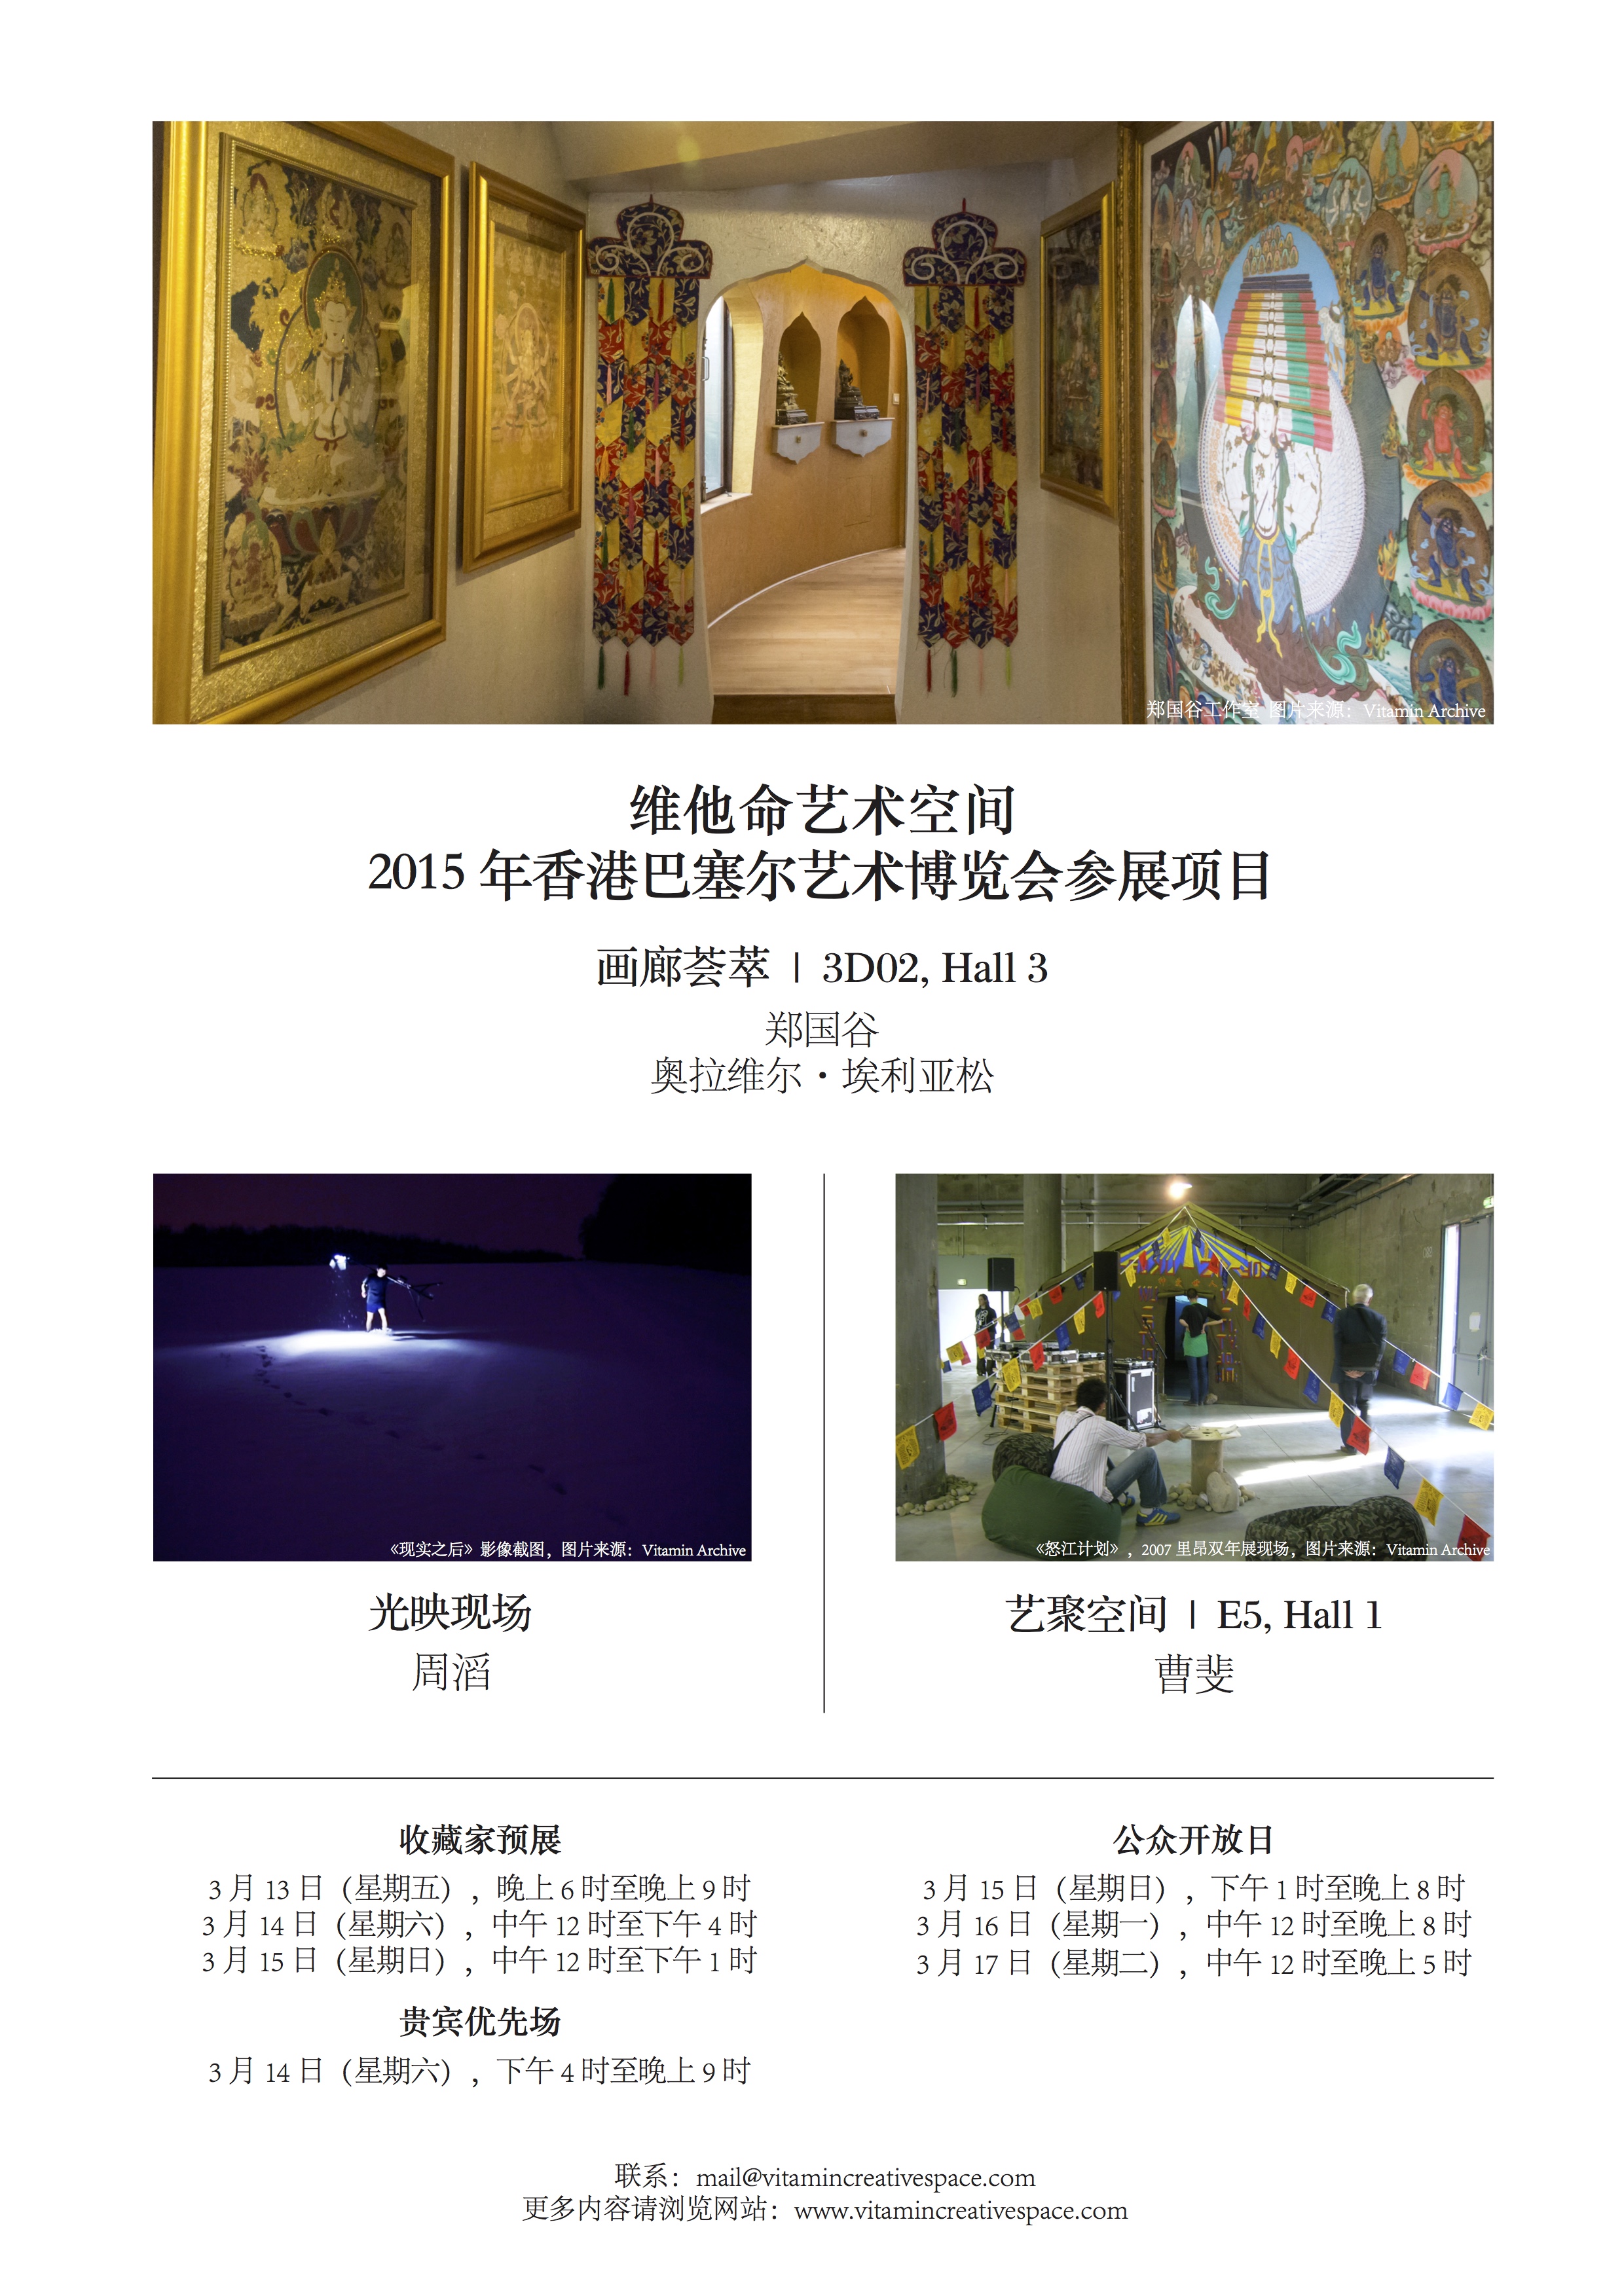 ABHK2015 invitation (CN)